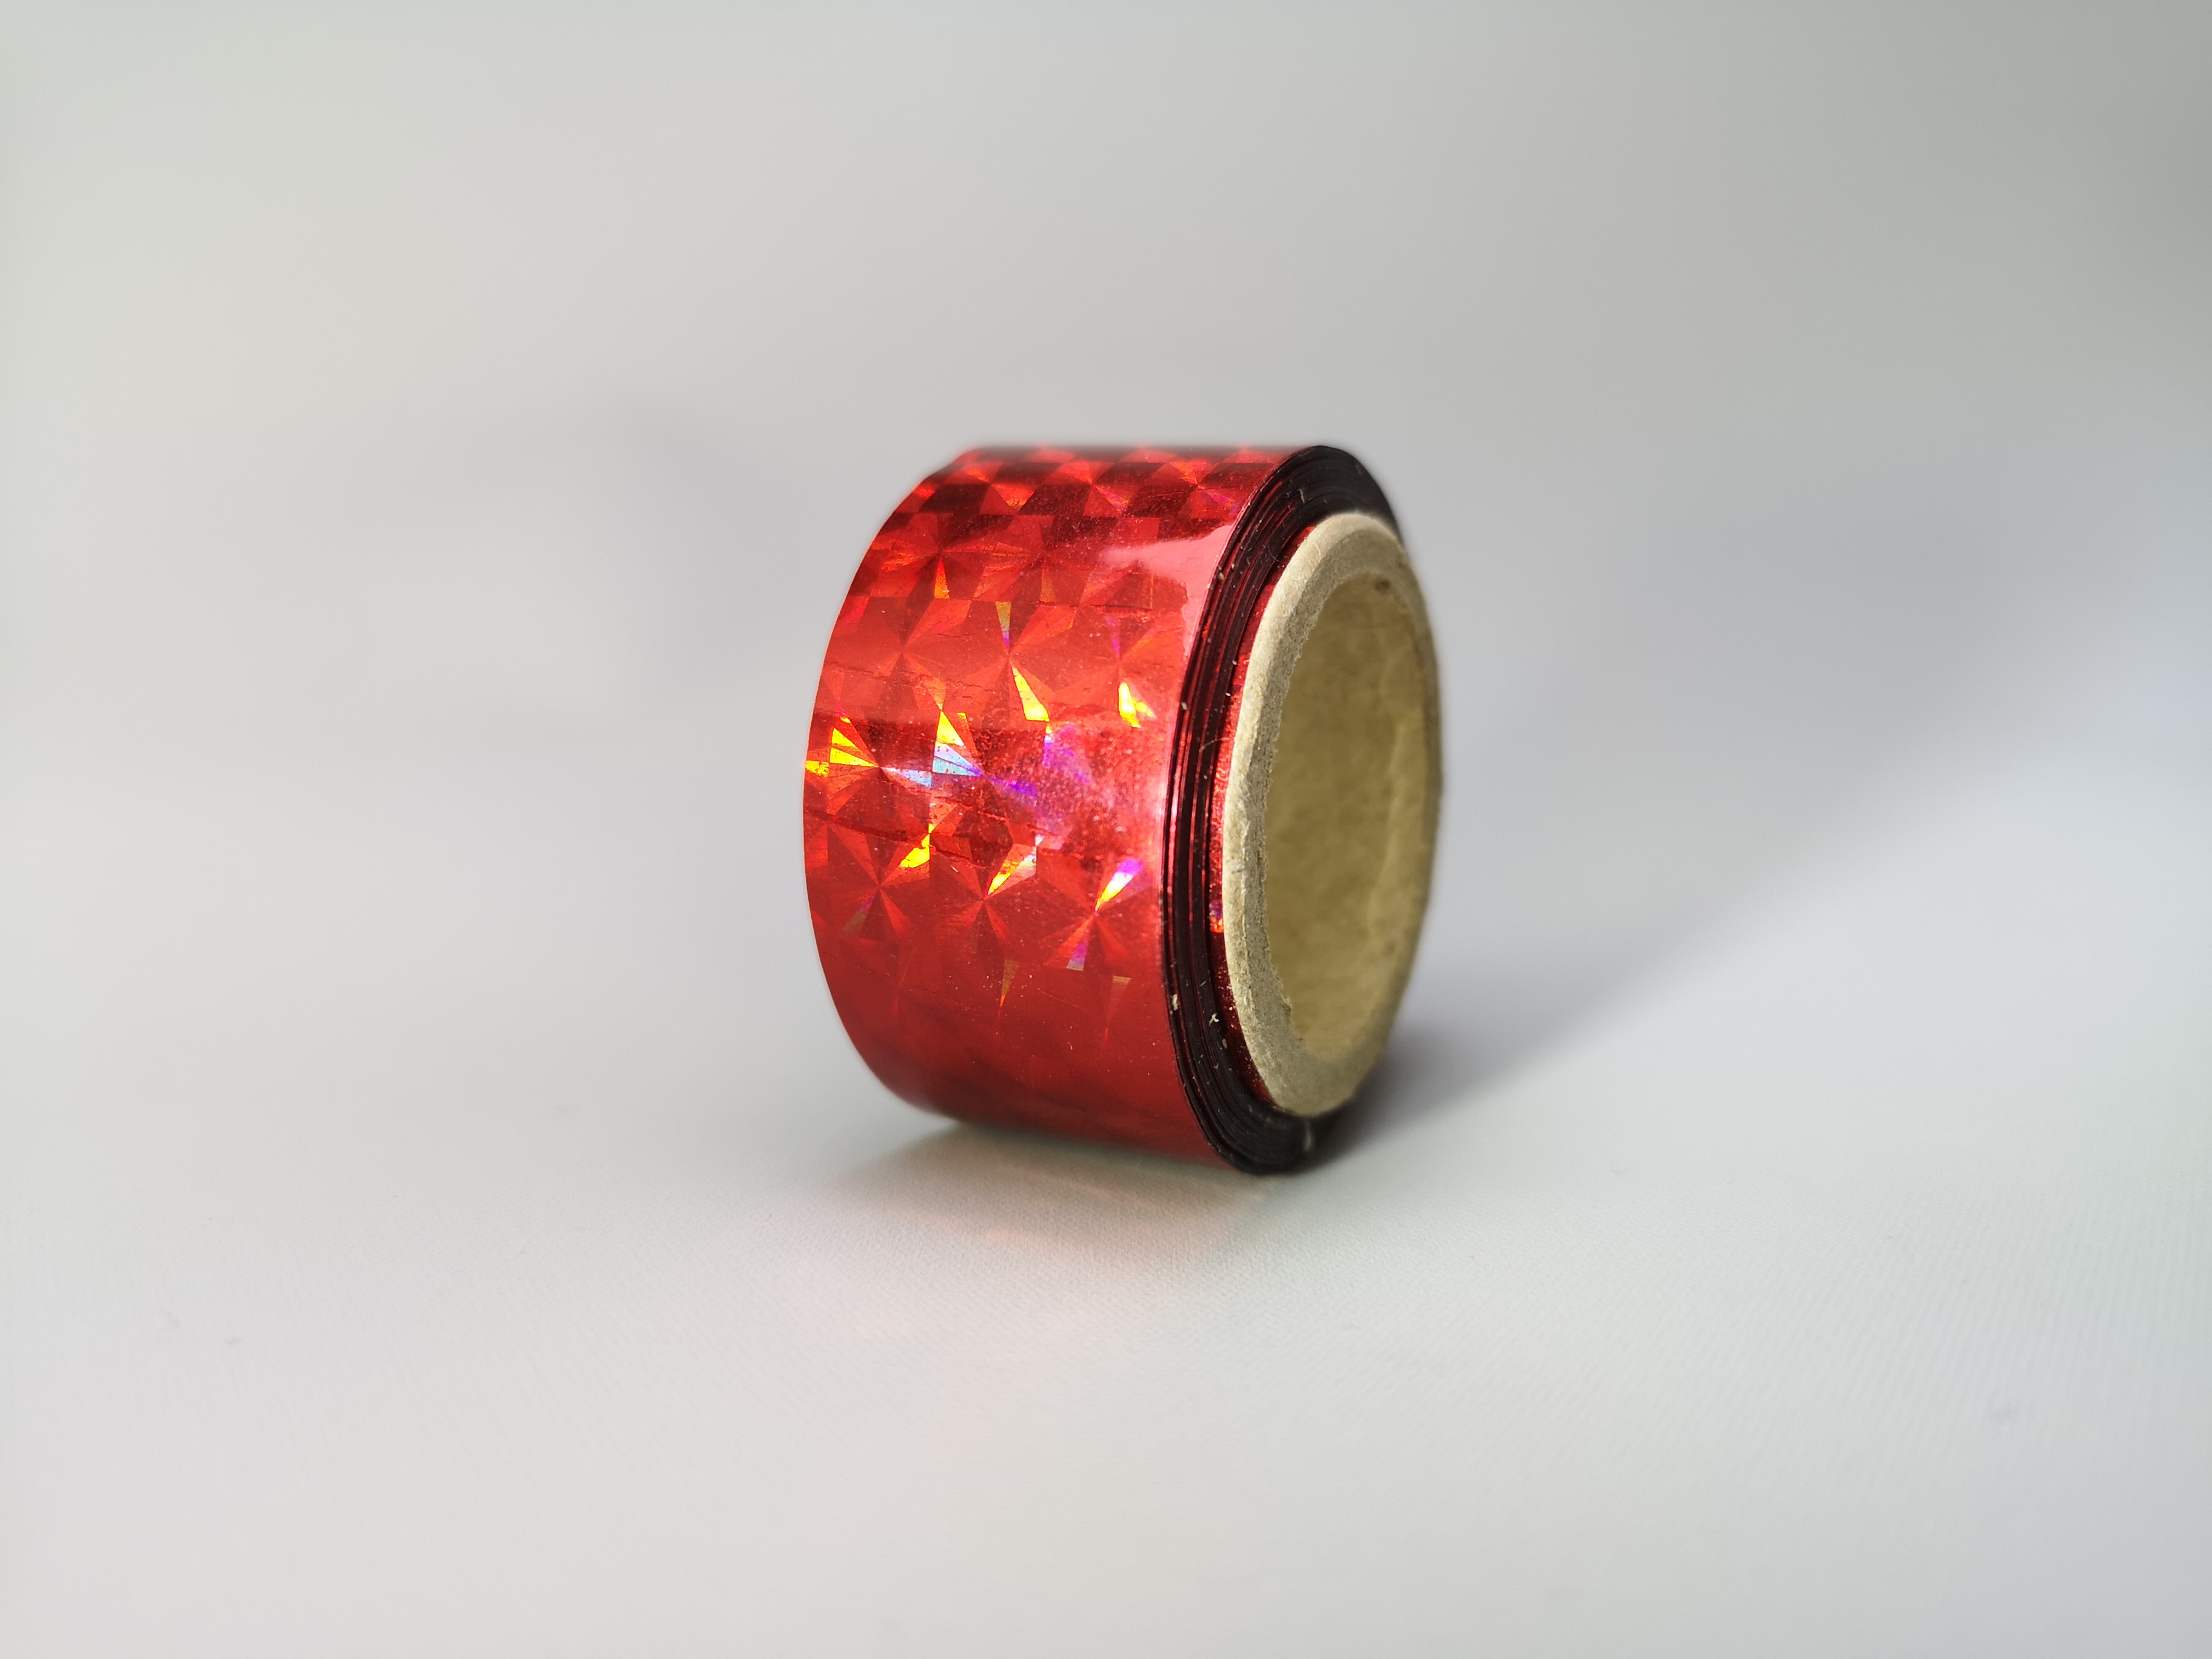 Holografic Prisma Red 11m Deco-Tape